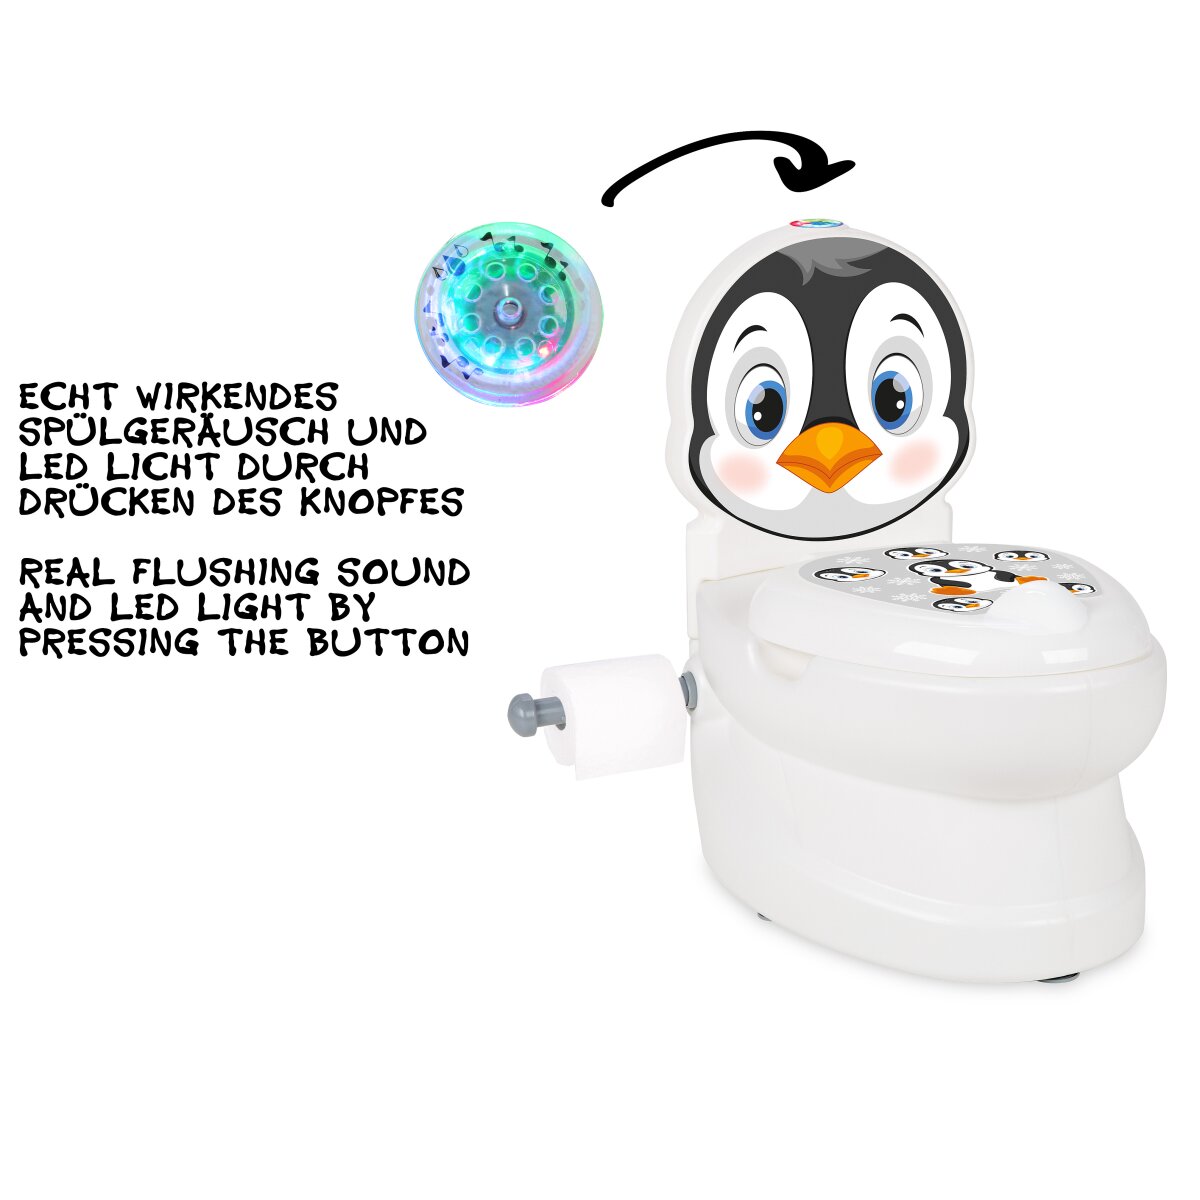 Meine kleine Toilette Pinguin mit Spülsound und Toilettenpapierhalter